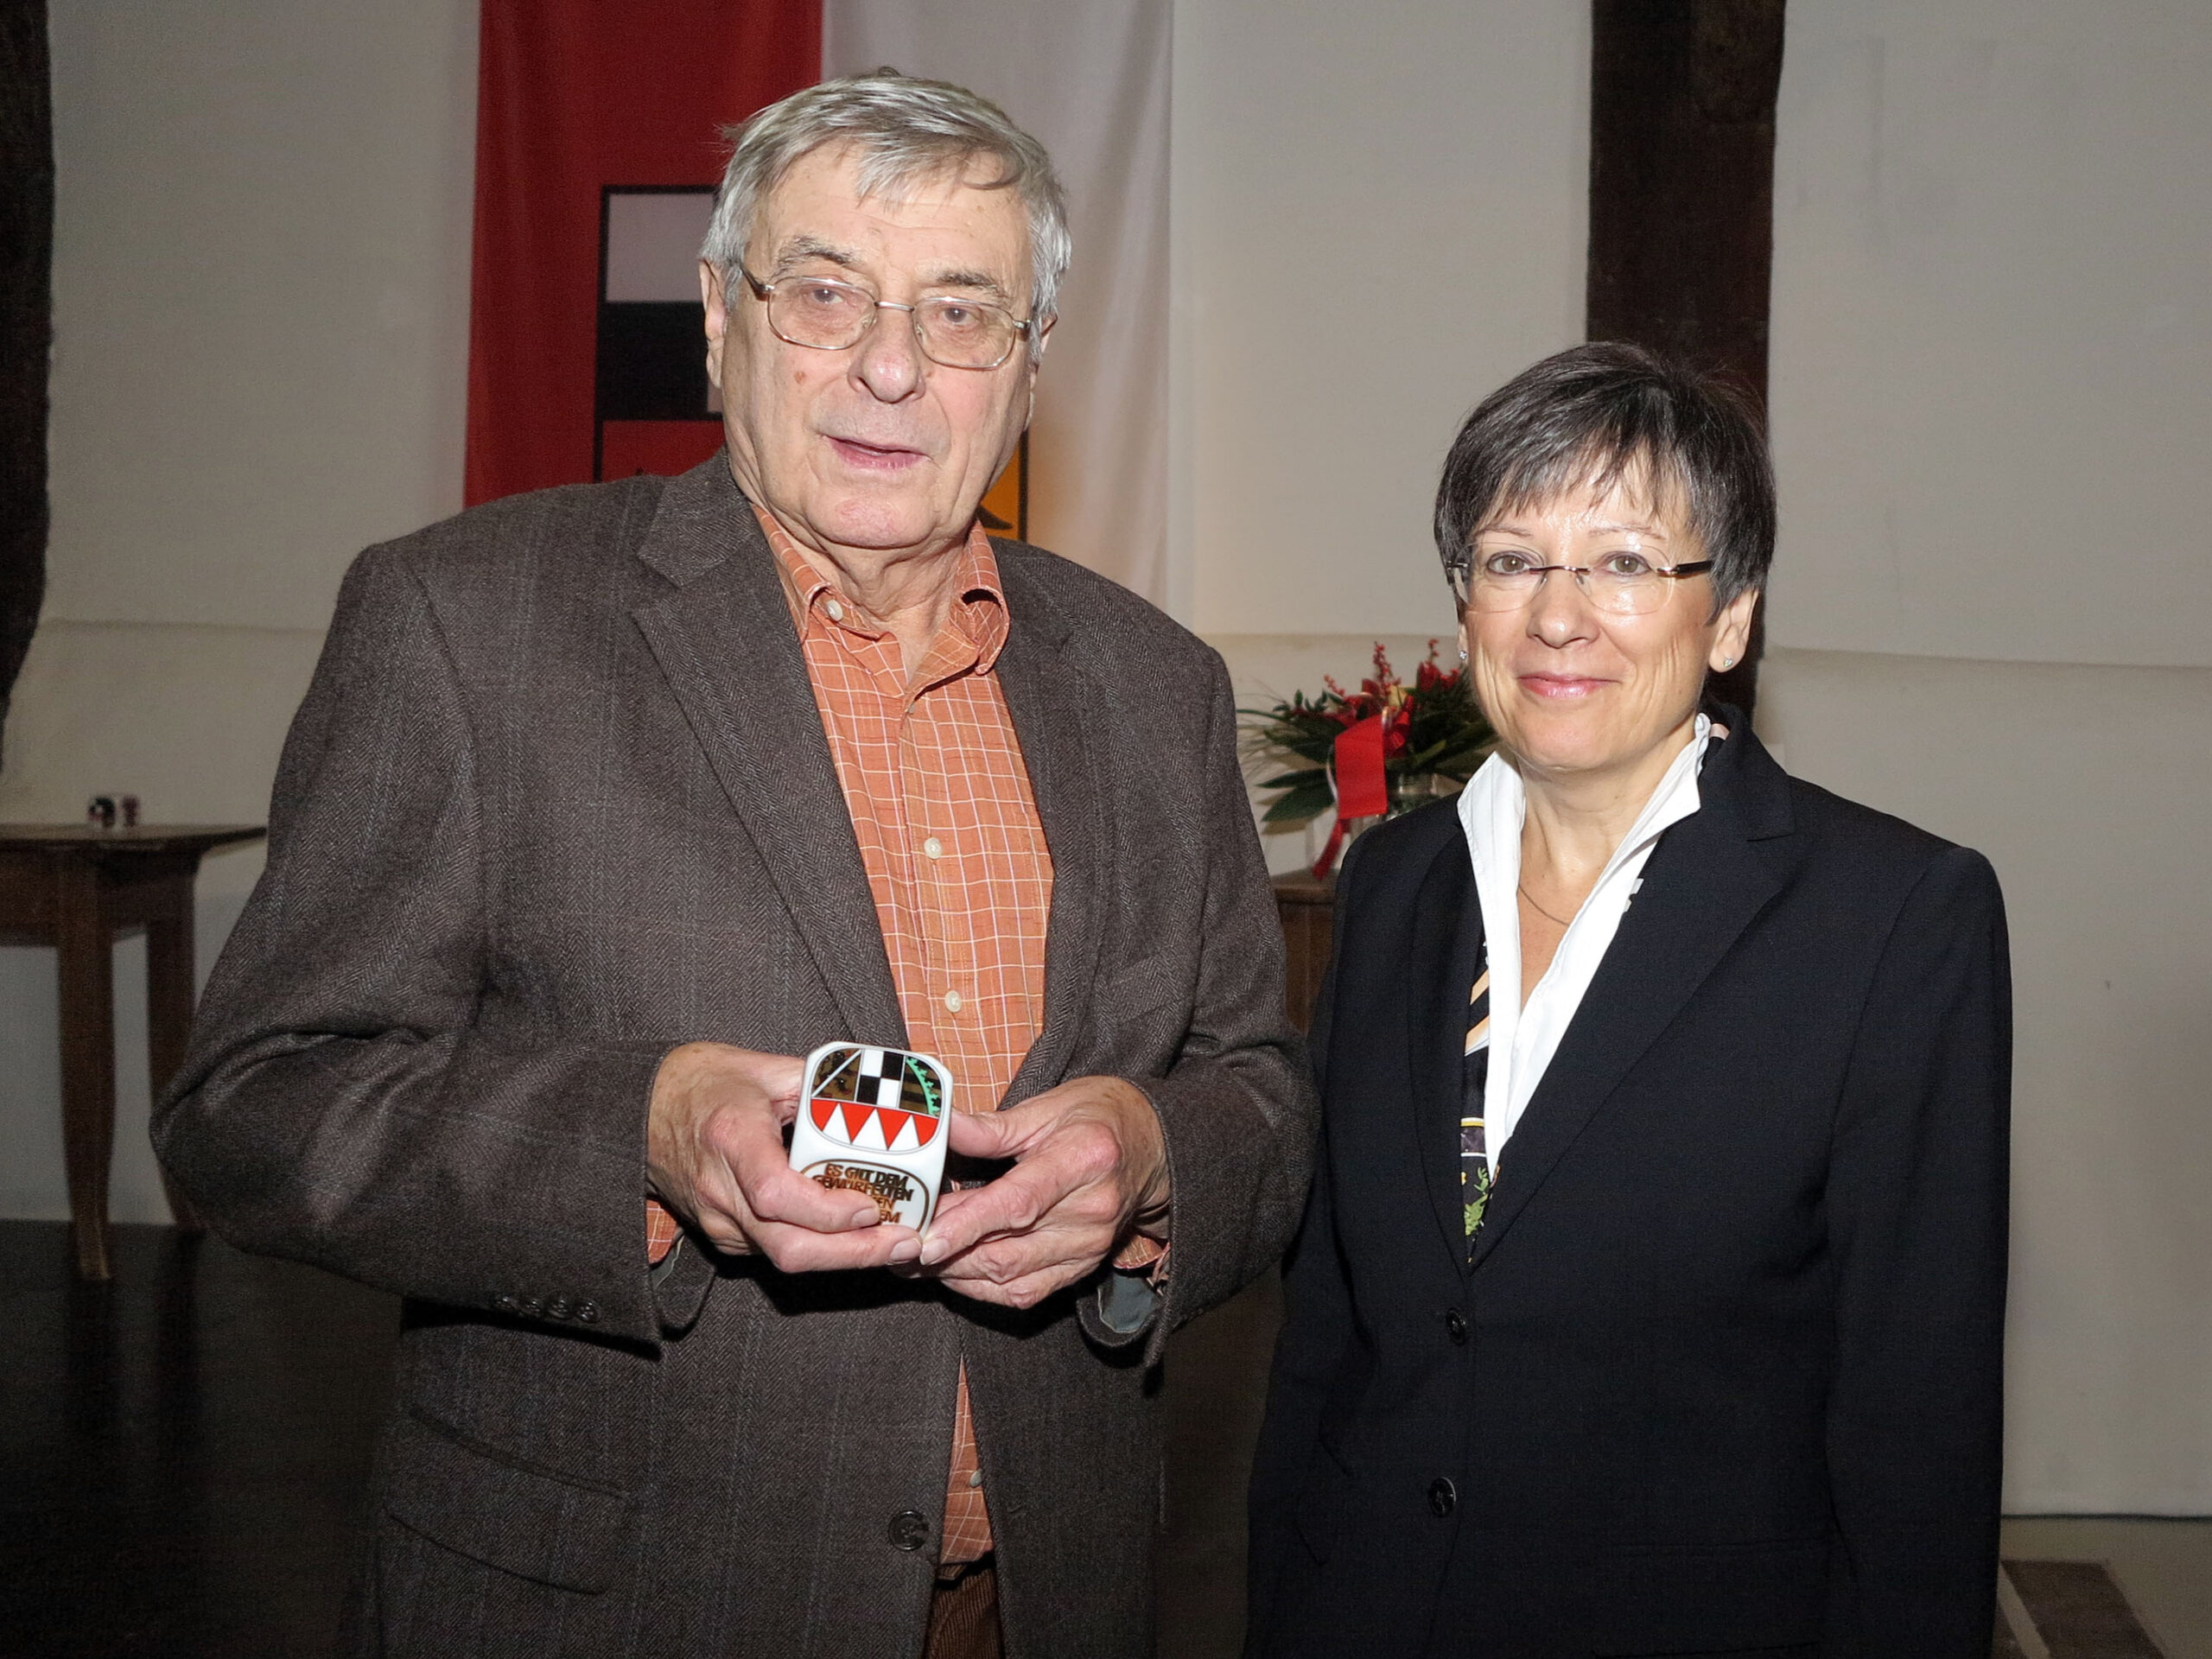 Verleihung des Frankenwürfels 2016 in Bad Windsheim